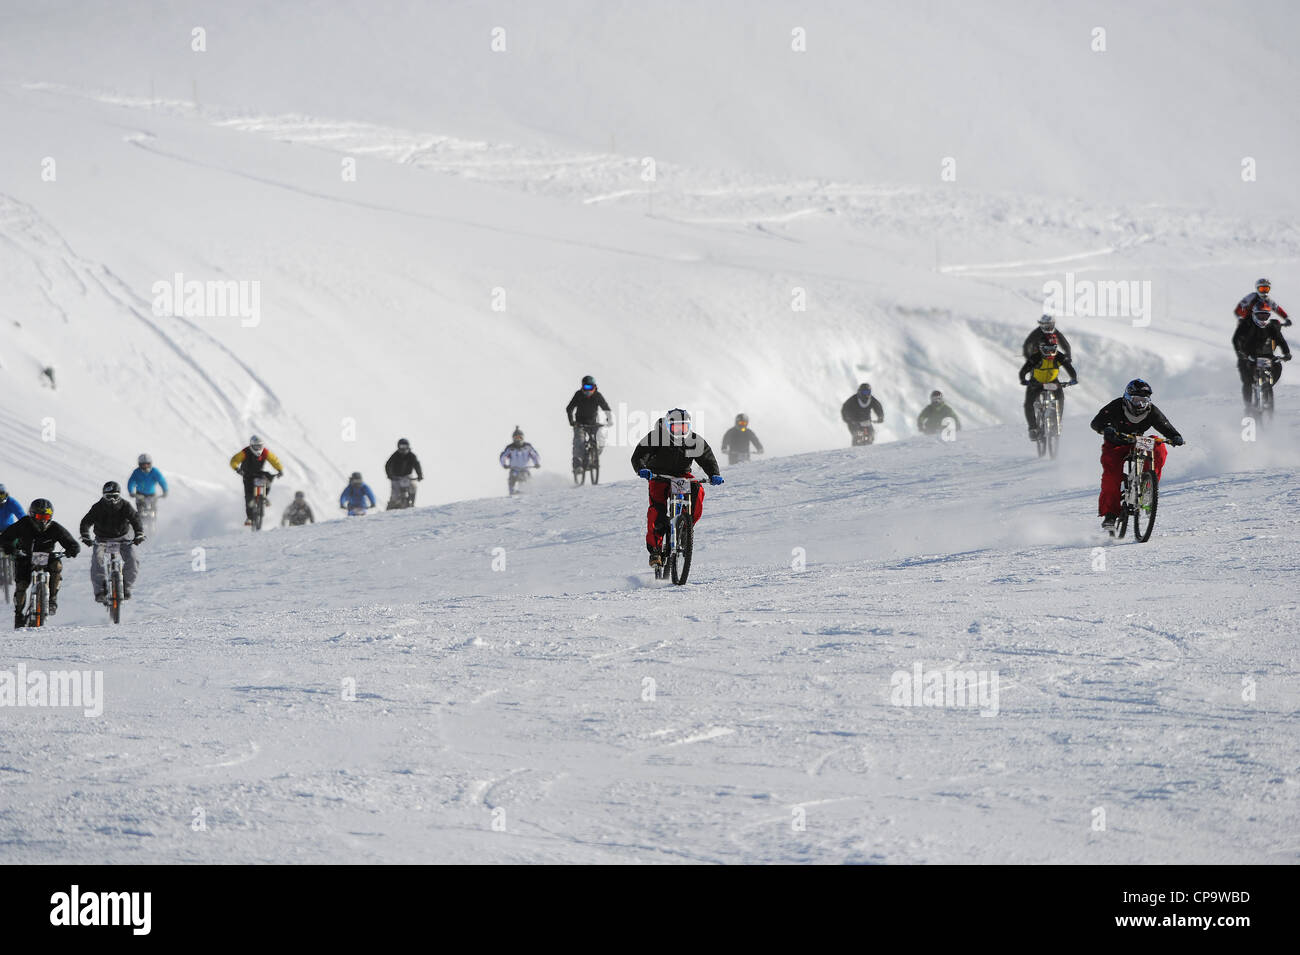 Course de vtt de descente en vitesse sur la neige au cours de la Saas Fee Glacier Bike Race en Suisse. Banque D'Images